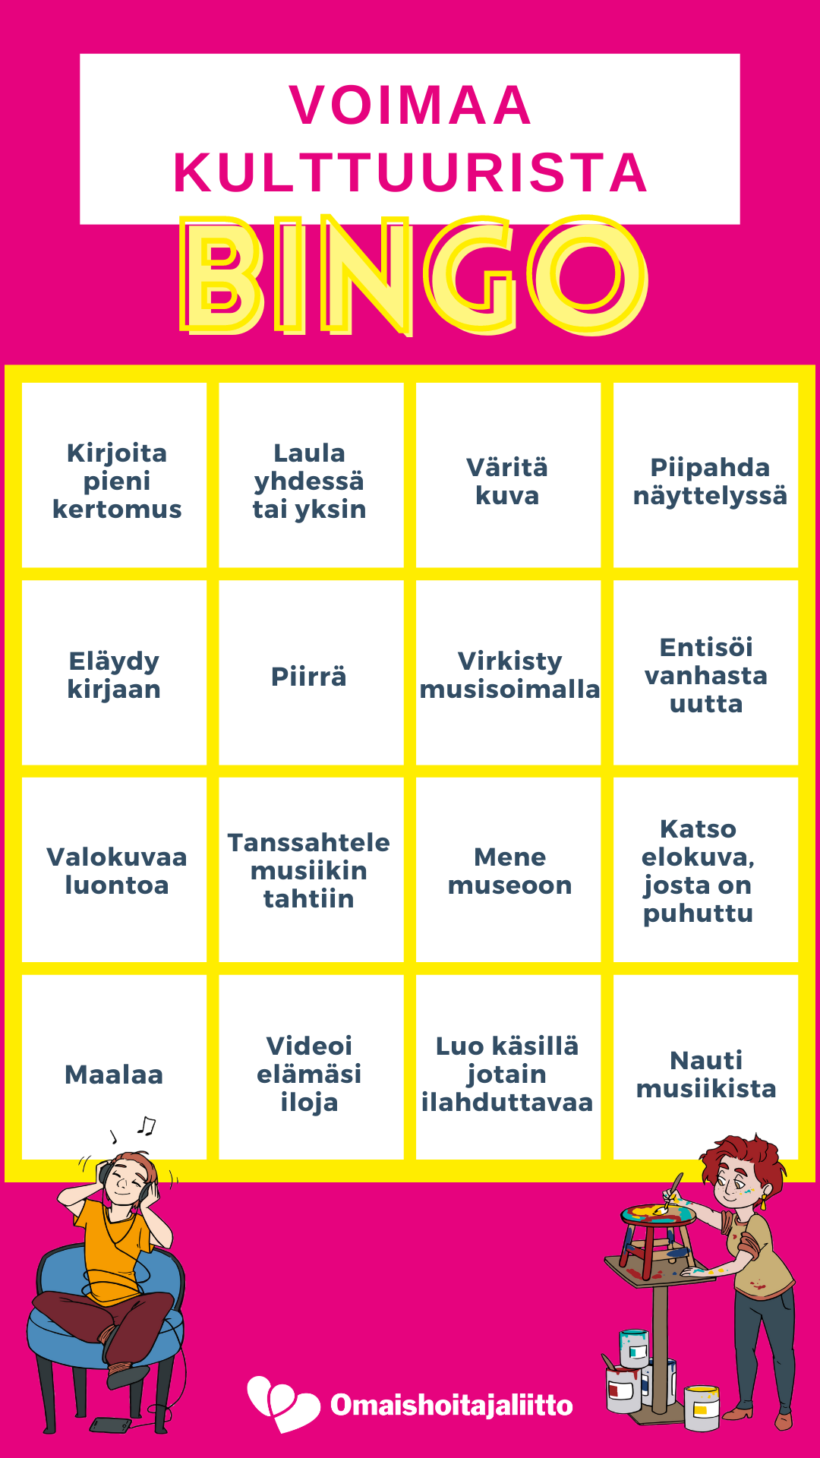 Voimaa kulttuurista bingo, jossa erilaisia kulttuuritehtäviä taulukkona.